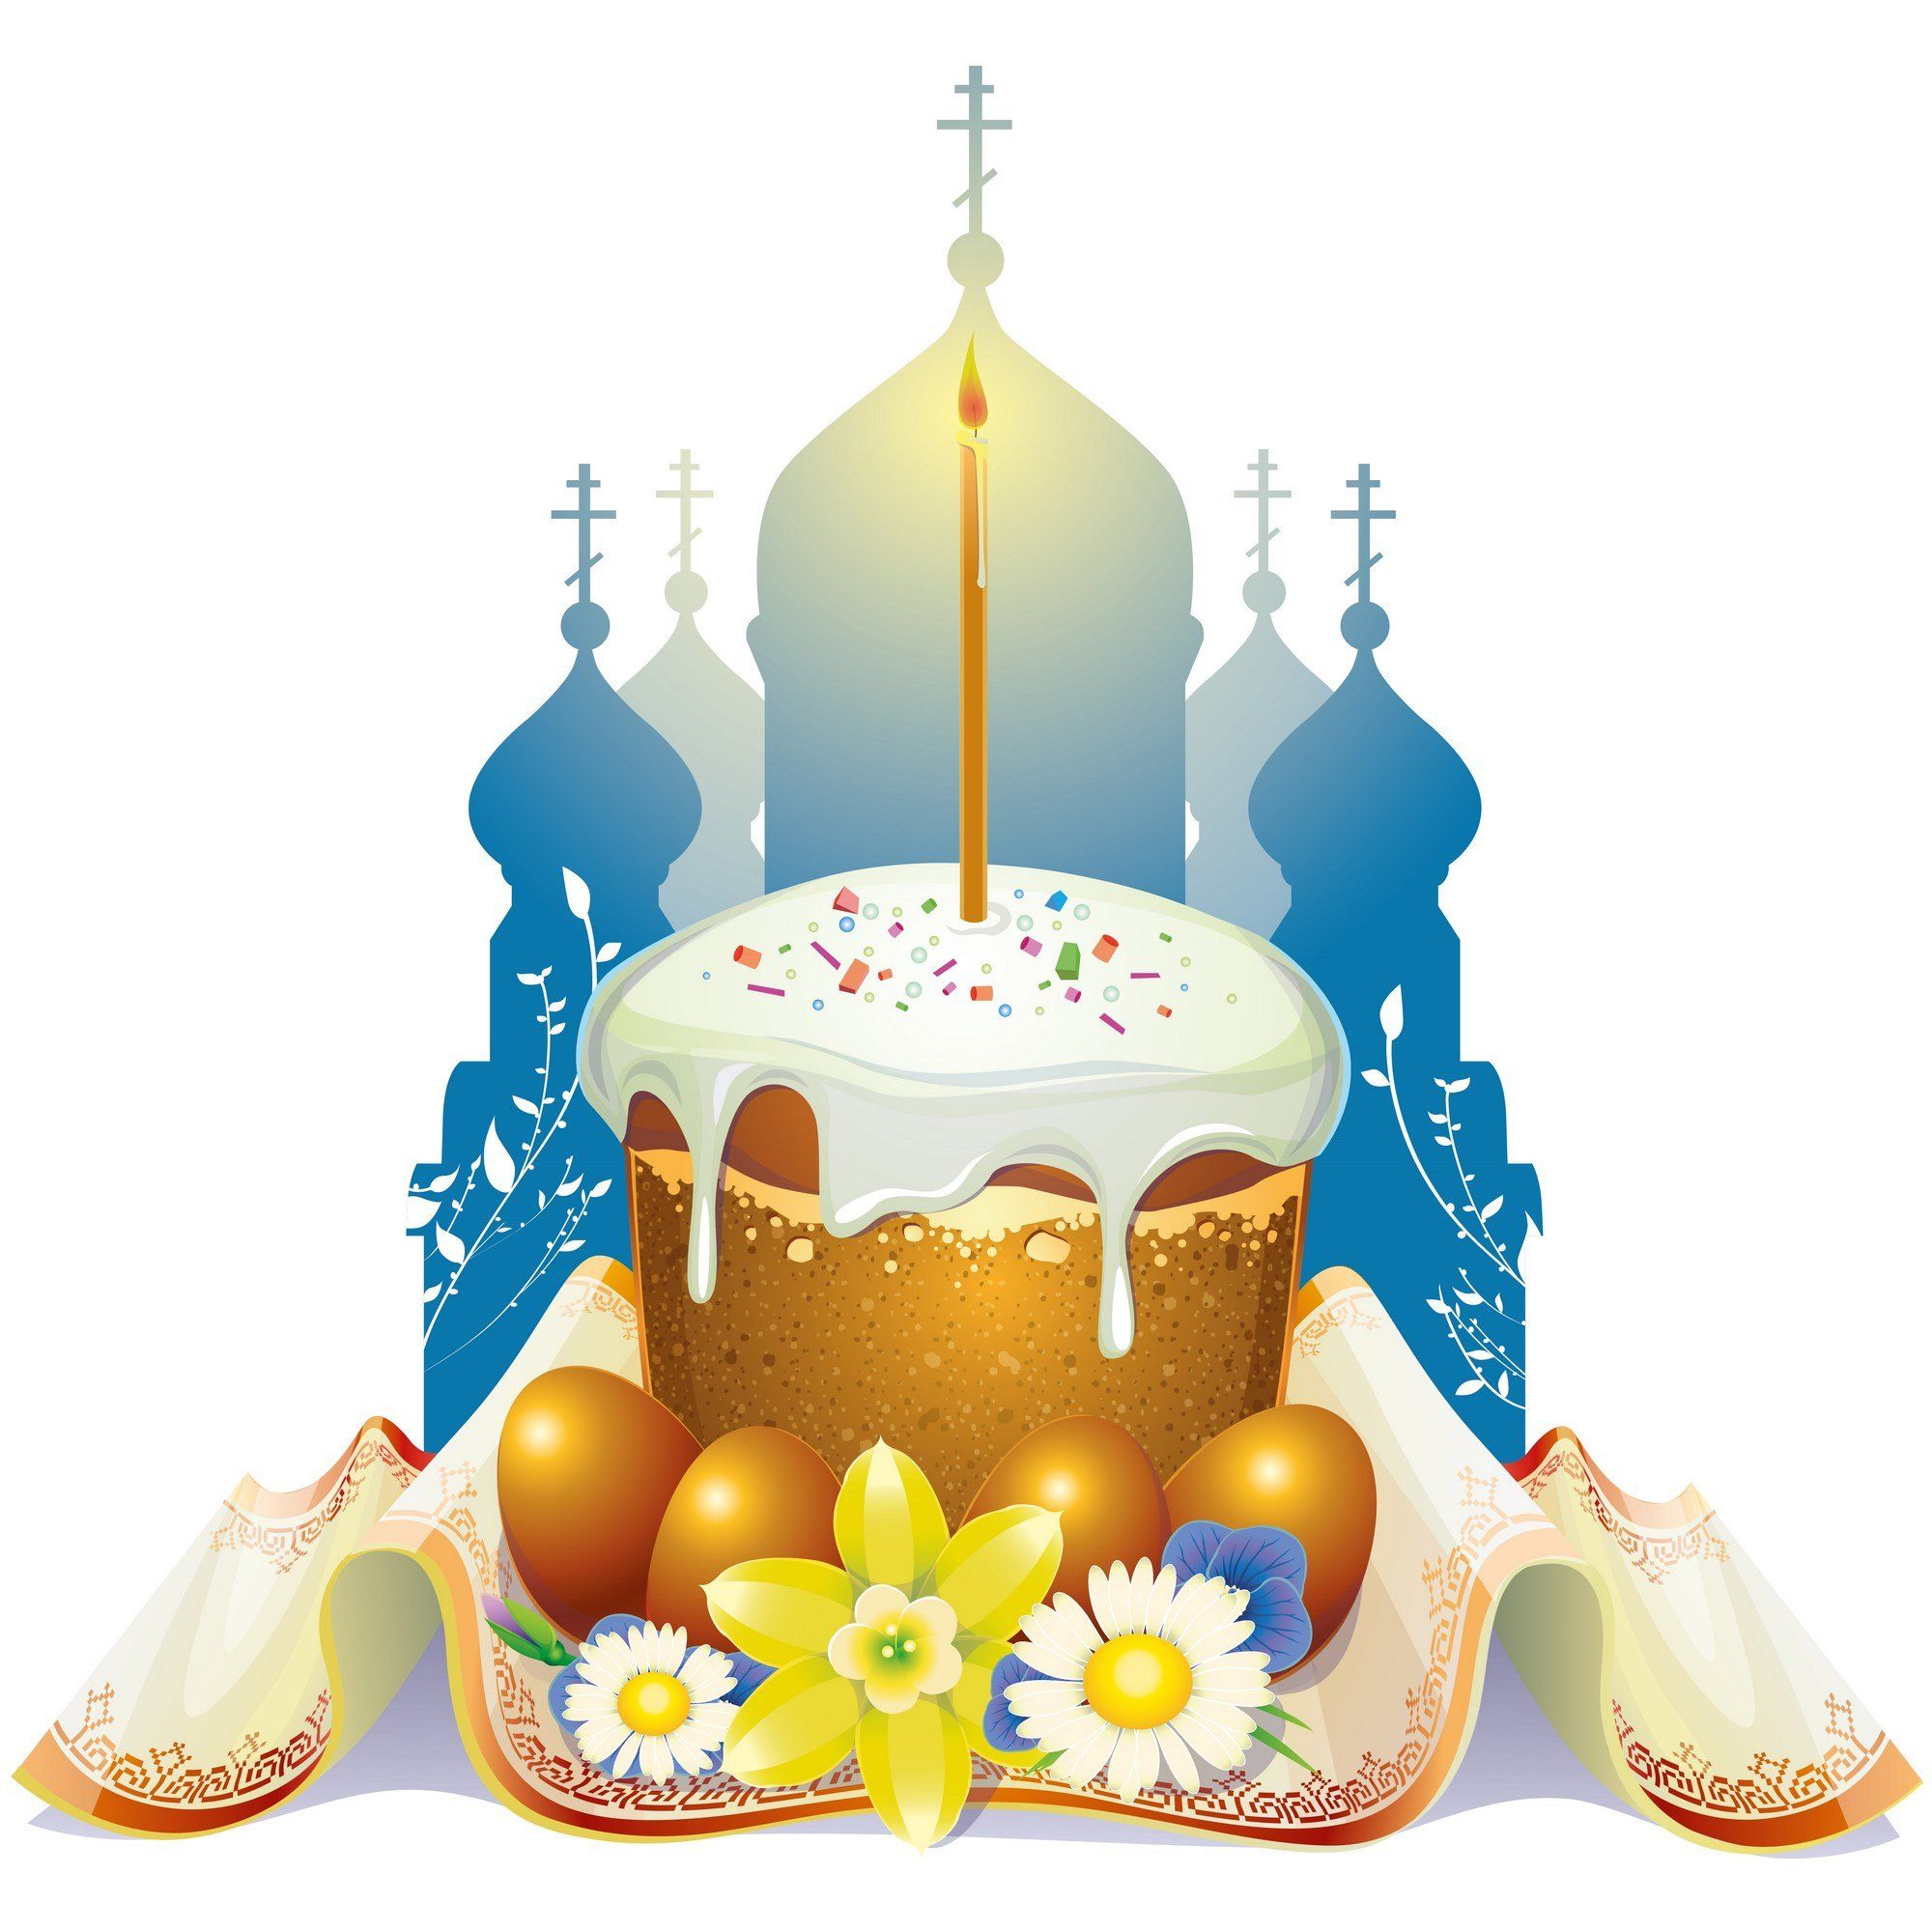 Православная Пасха 2021 - день рождения Христа, Воскресения